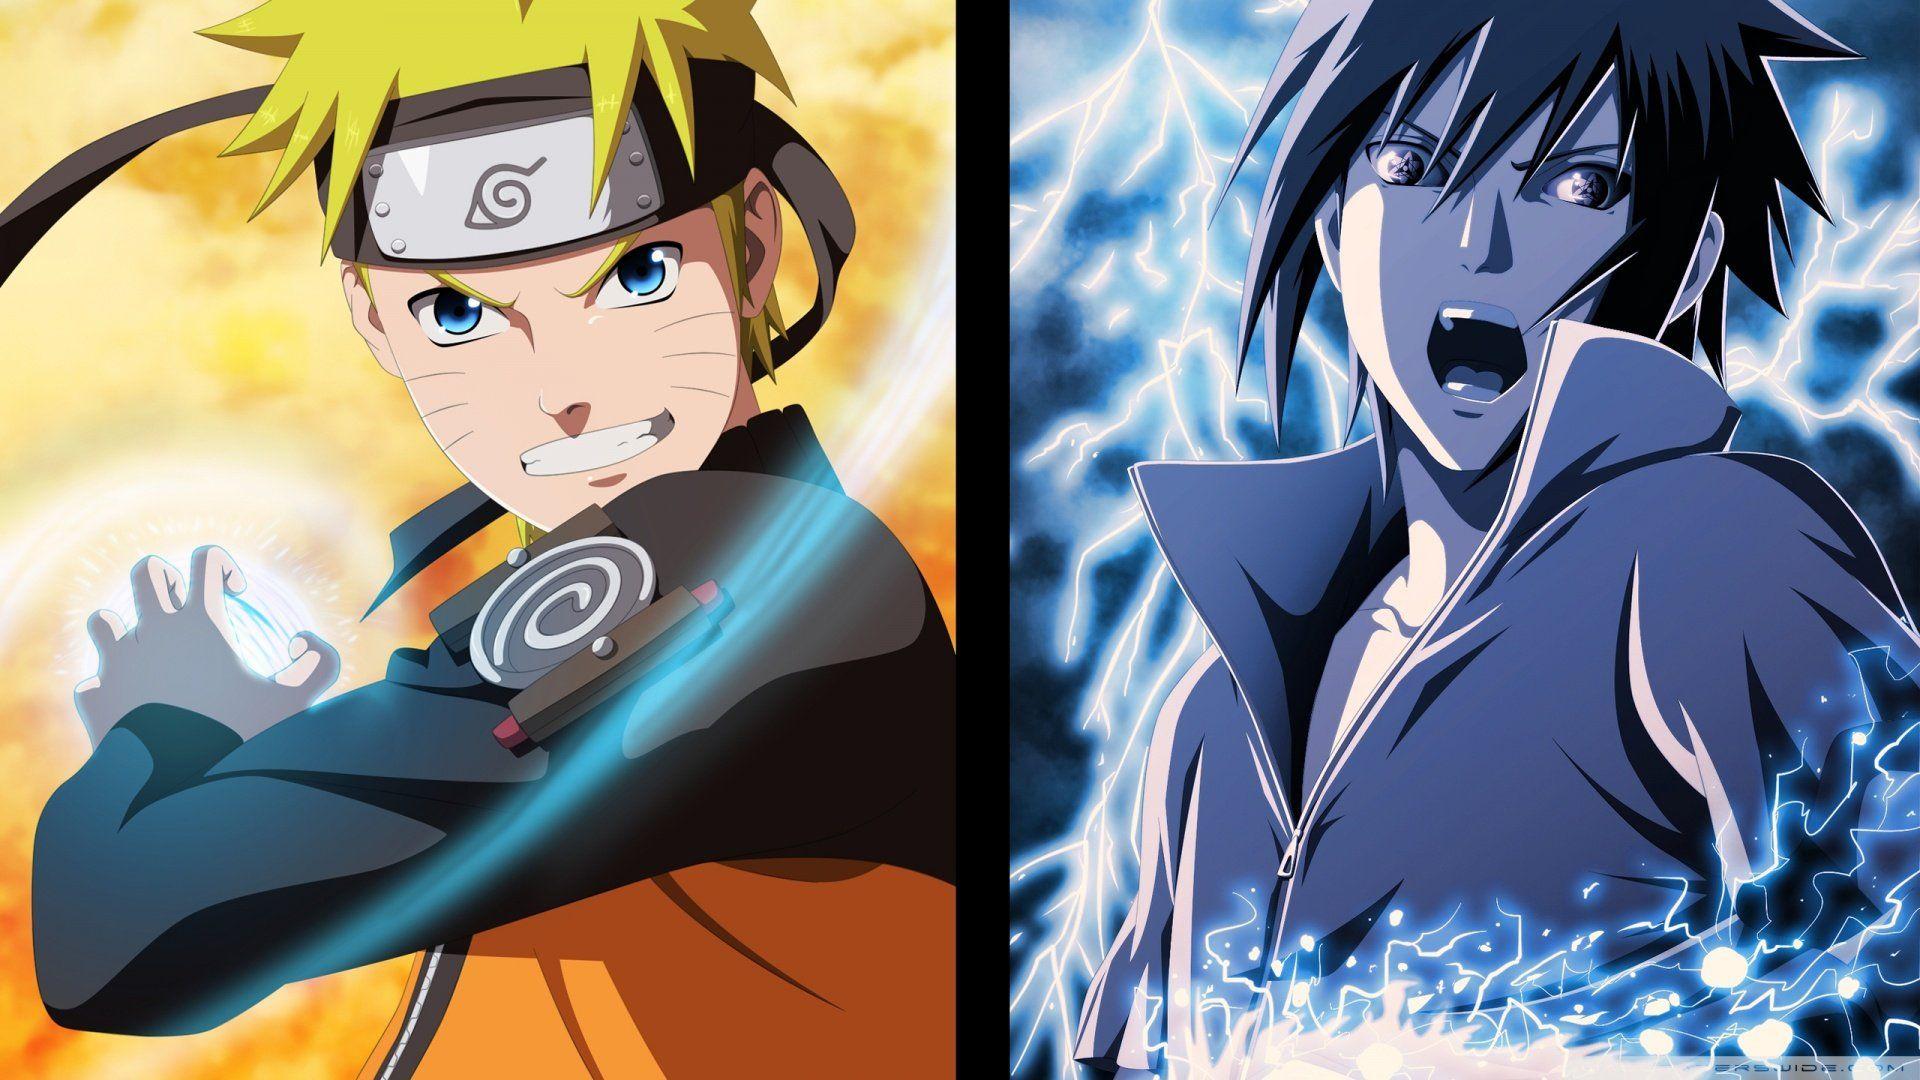 Naruto and Sasuke Wallpapers - Top Free Naruto and Sasuke Backgrounds ...